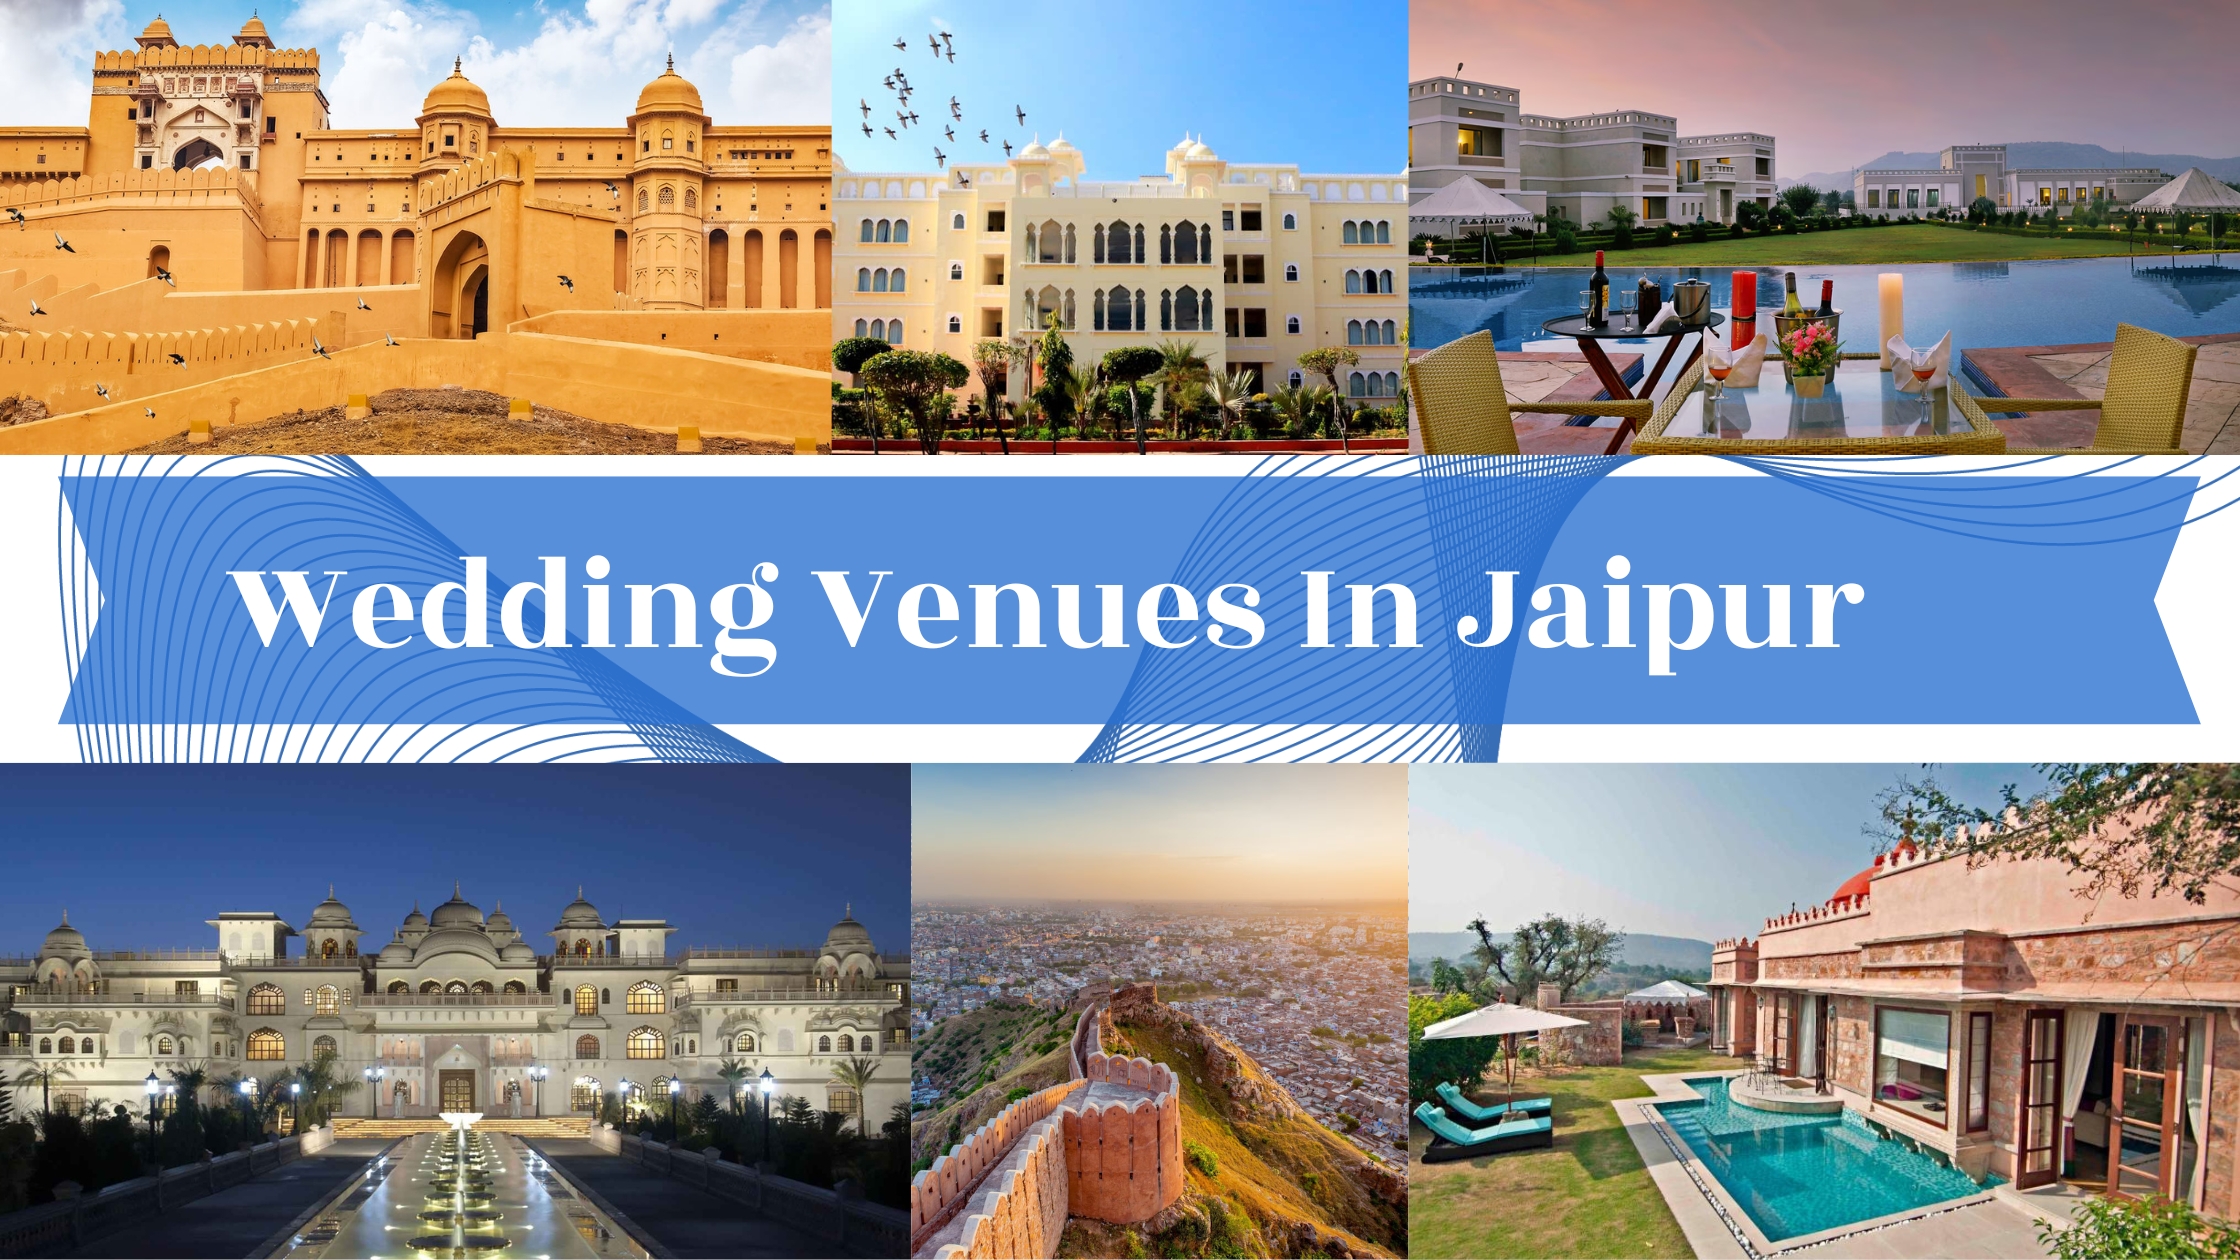 Wedding venues in Jaipur